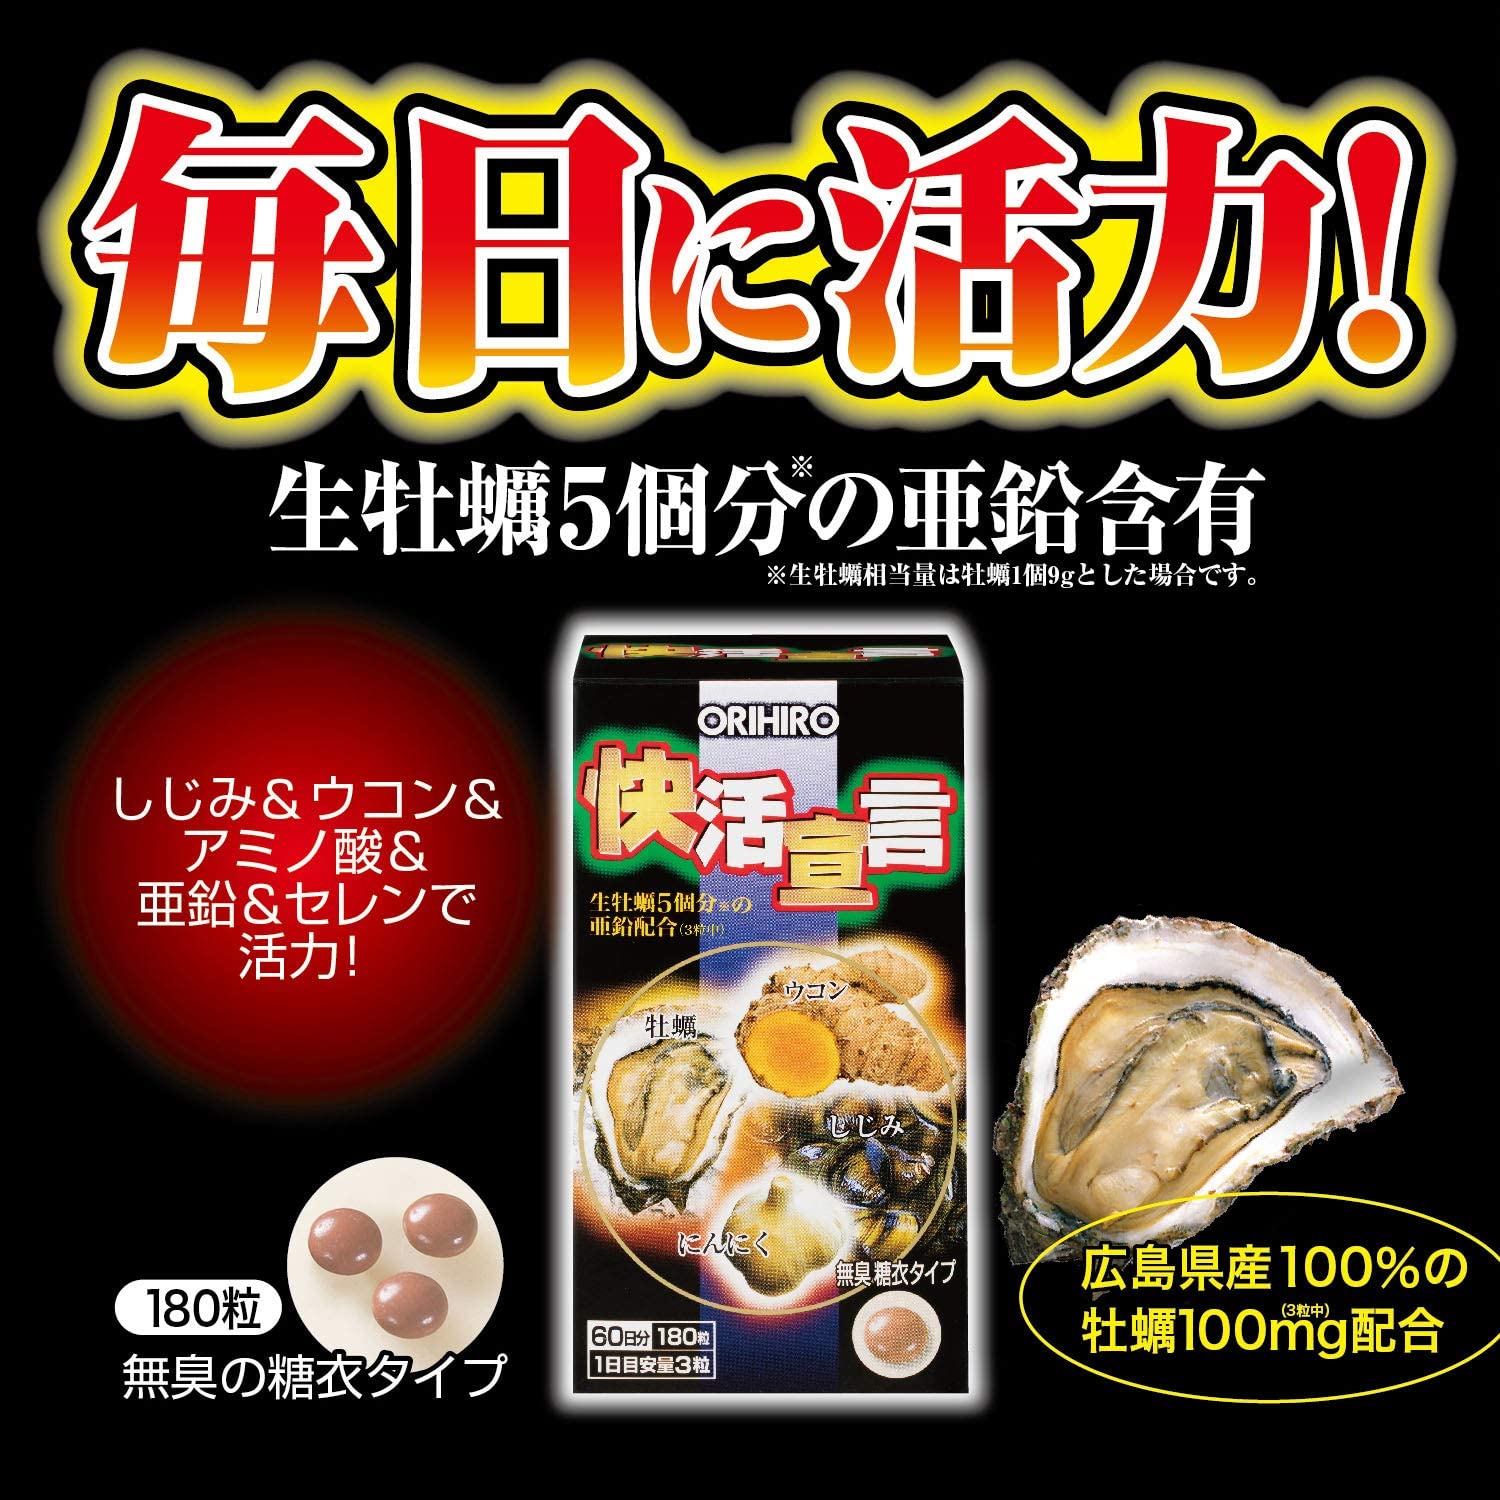 ORIHIRO Cheerful Declaration Oyster/Turmeric/Shijimi Clam/ Garlic 60 Days